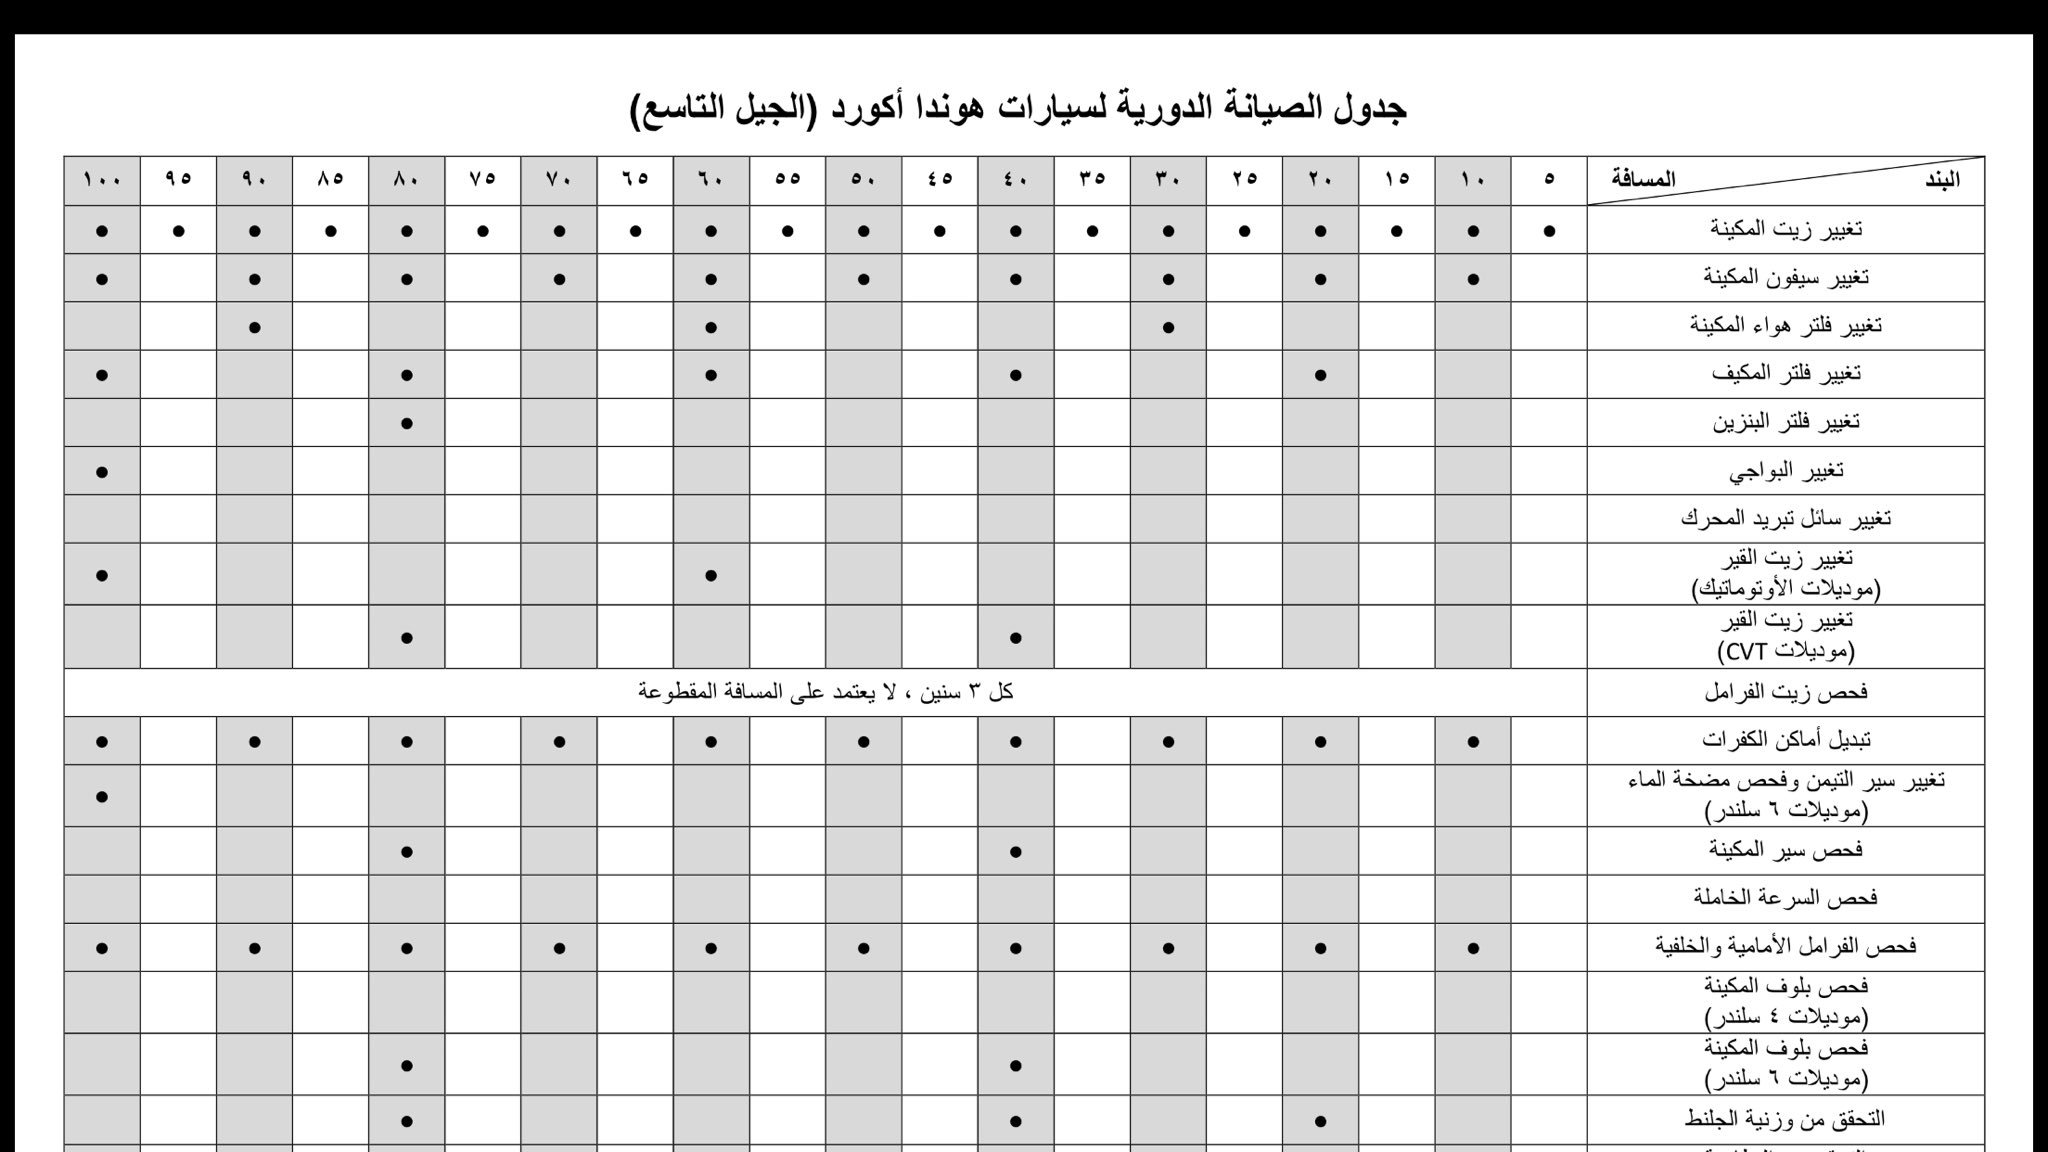 تويتر \ أحمد الهمزاني على تويتر: "هذا شكل جدول الصيانة الدورية للأكورد أنصح  بطباعته والاحتفاظ بنسخة في السيارة https://t.co/v7TpjH8SEw"